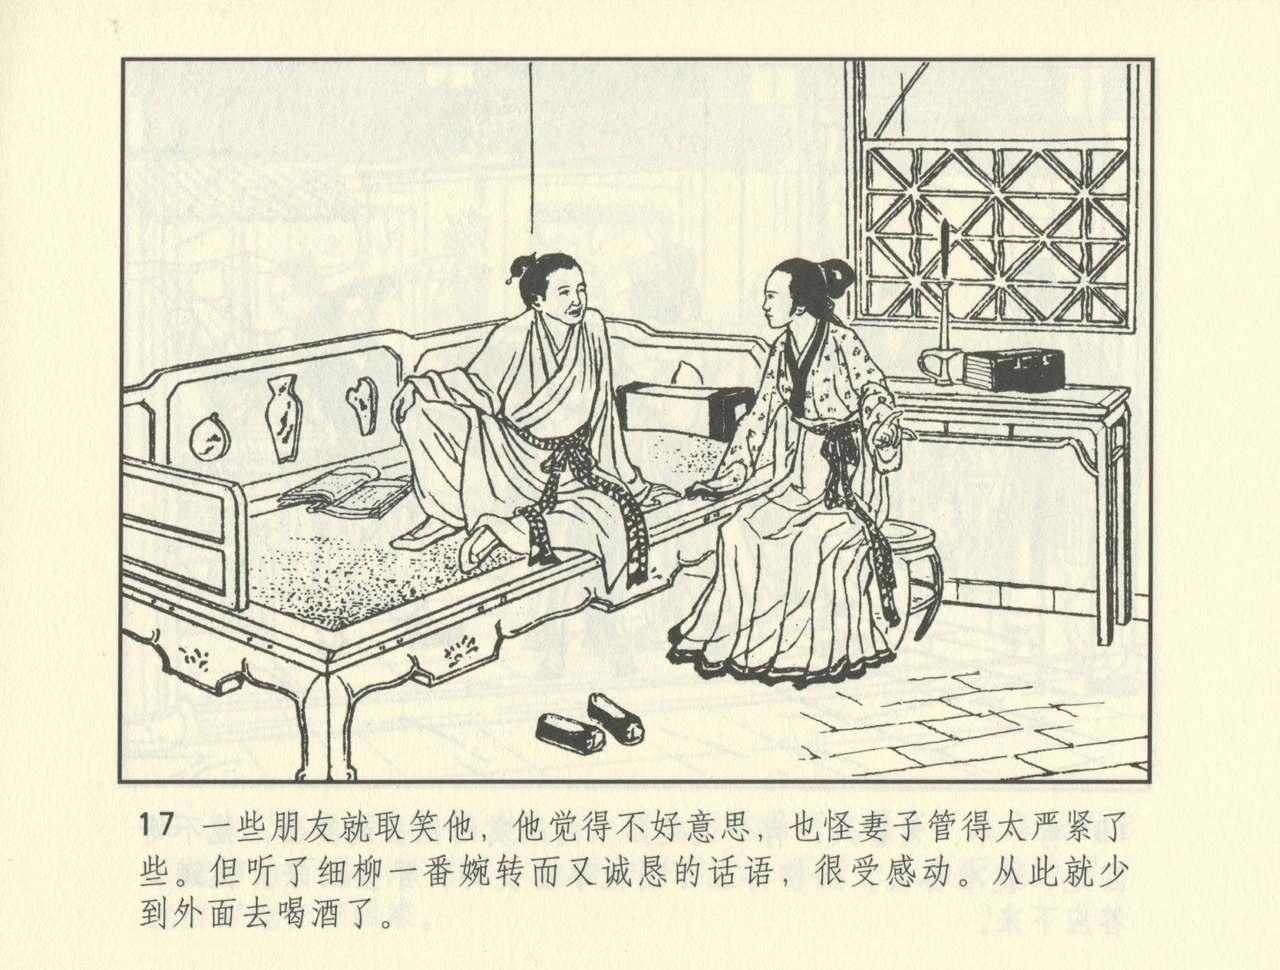 聊斋志异 张玮等绘 天津人民美术出版社 卷二十一 ~ 三十 489